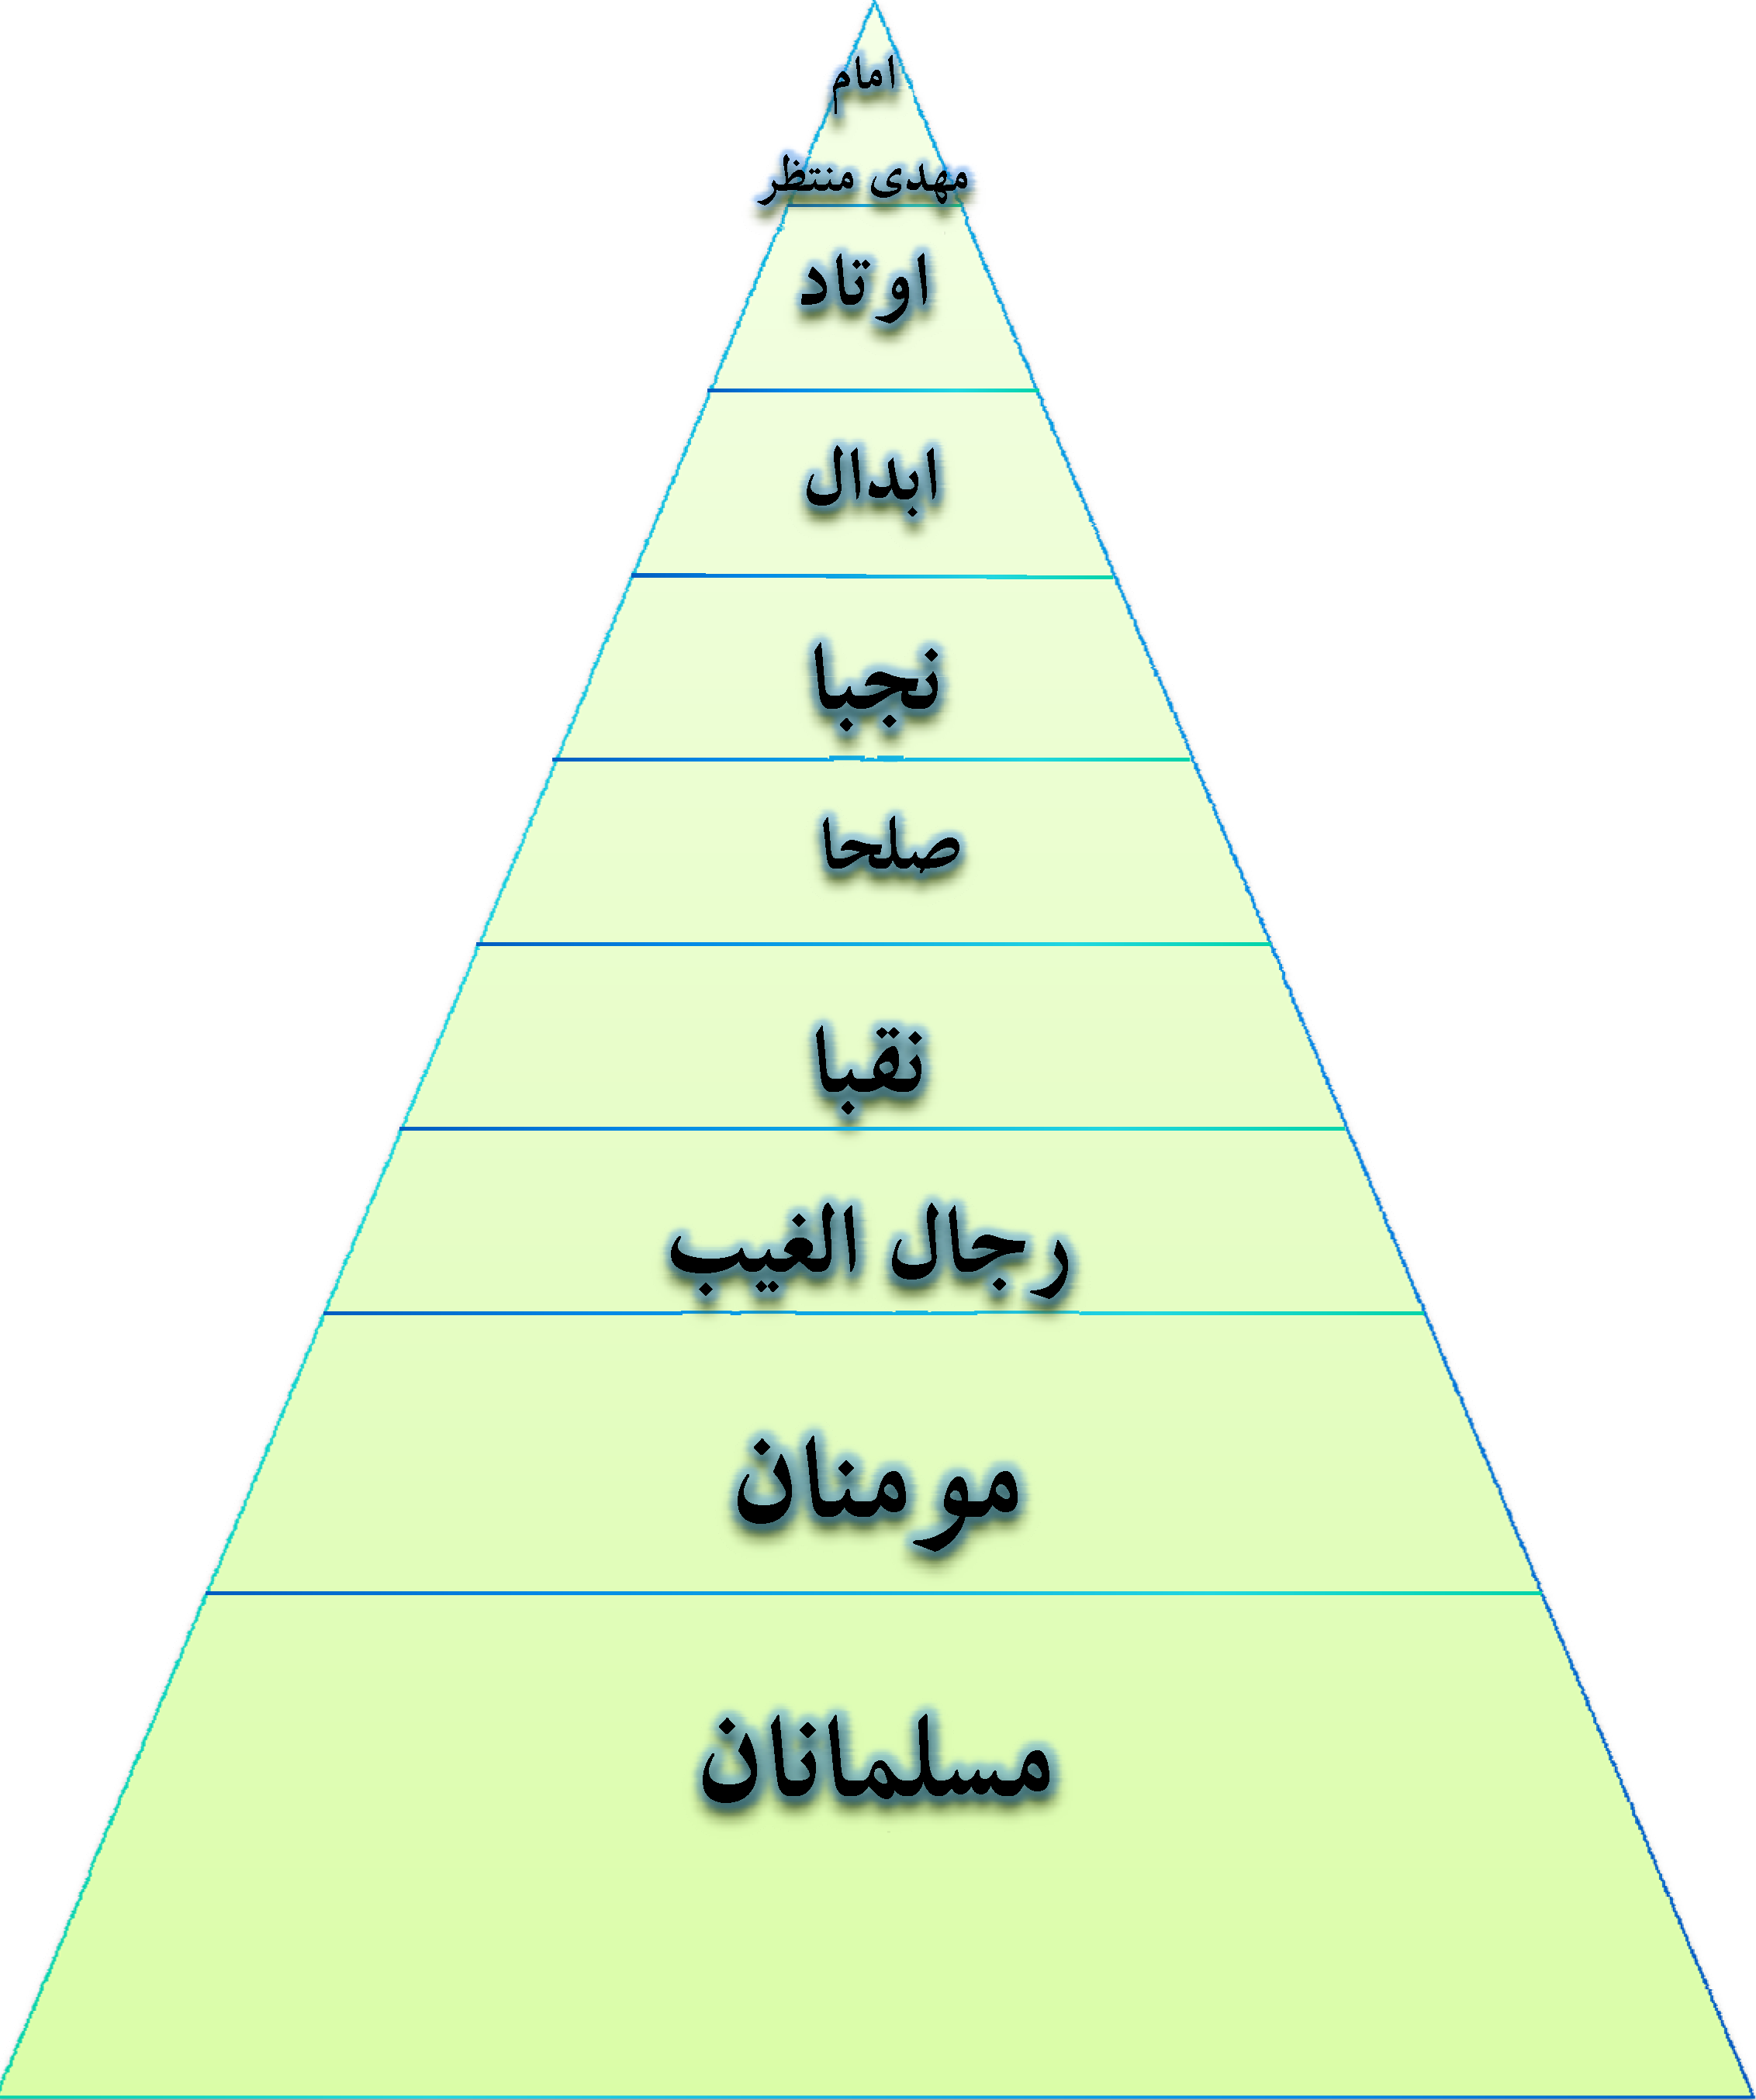 هرم توحید قدرت عبادی الصالحون Pyramid